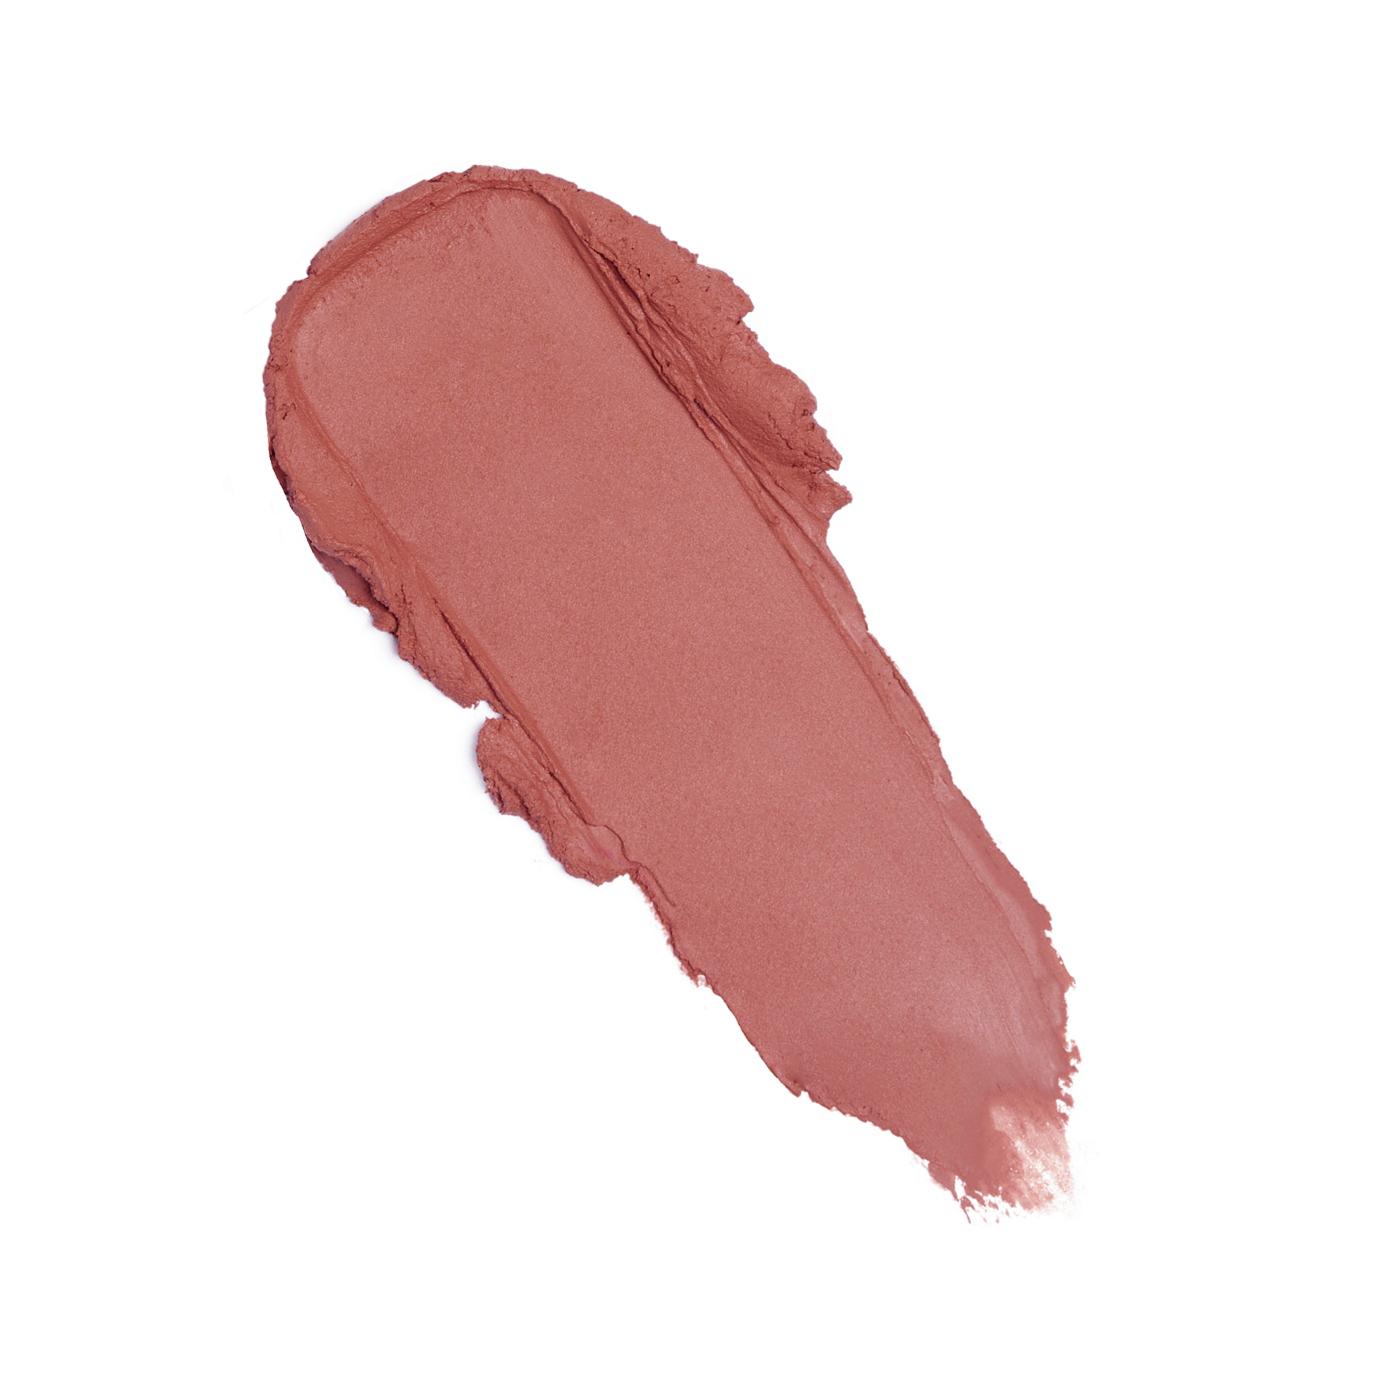 Makeup Revolution Lip Allure Soft Satin Lipstick - Brunch Pink Nude; image 2 of 3